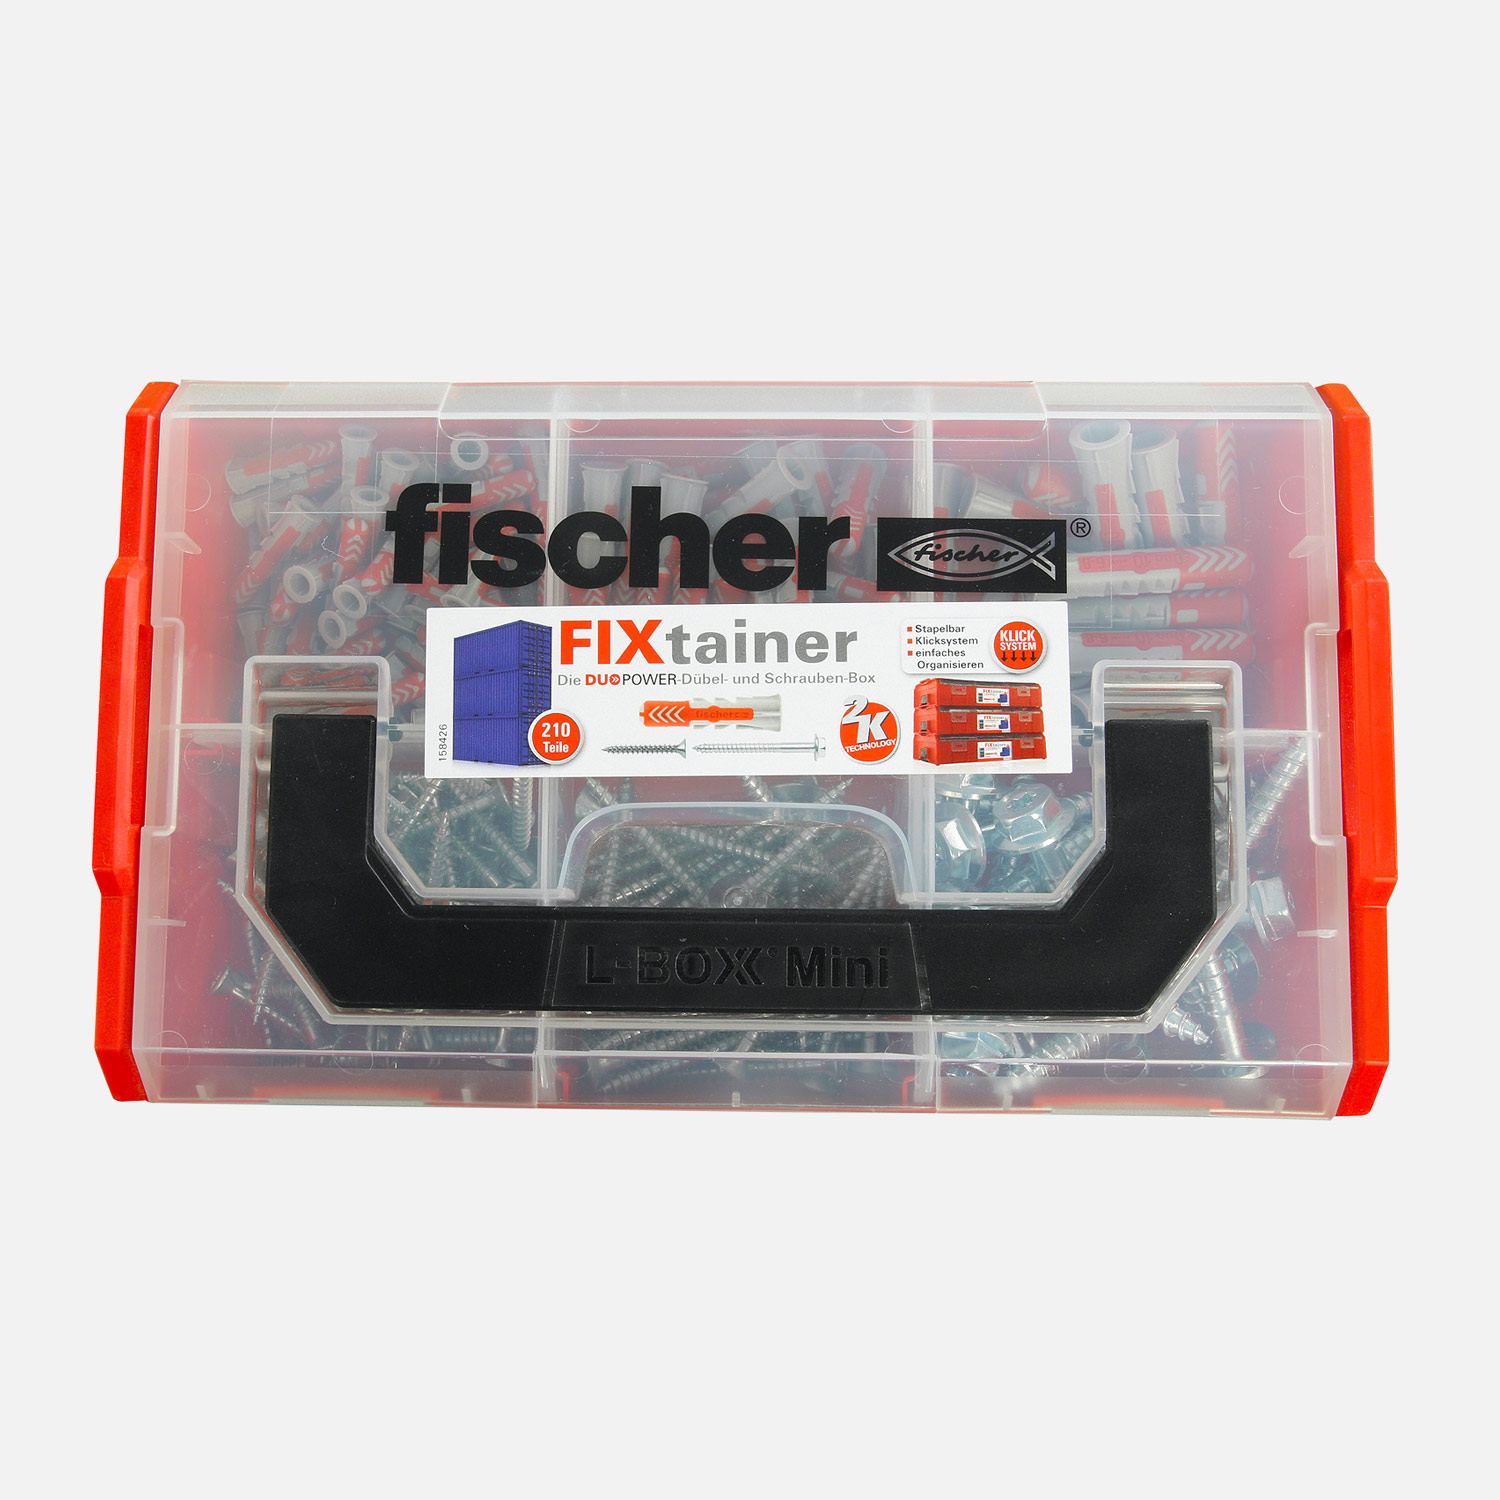 210 tlg. FISCHER FIXtainer - DUOPOWER Nylon-Dübel + Schrauben-Sortiment 6/8/10mm